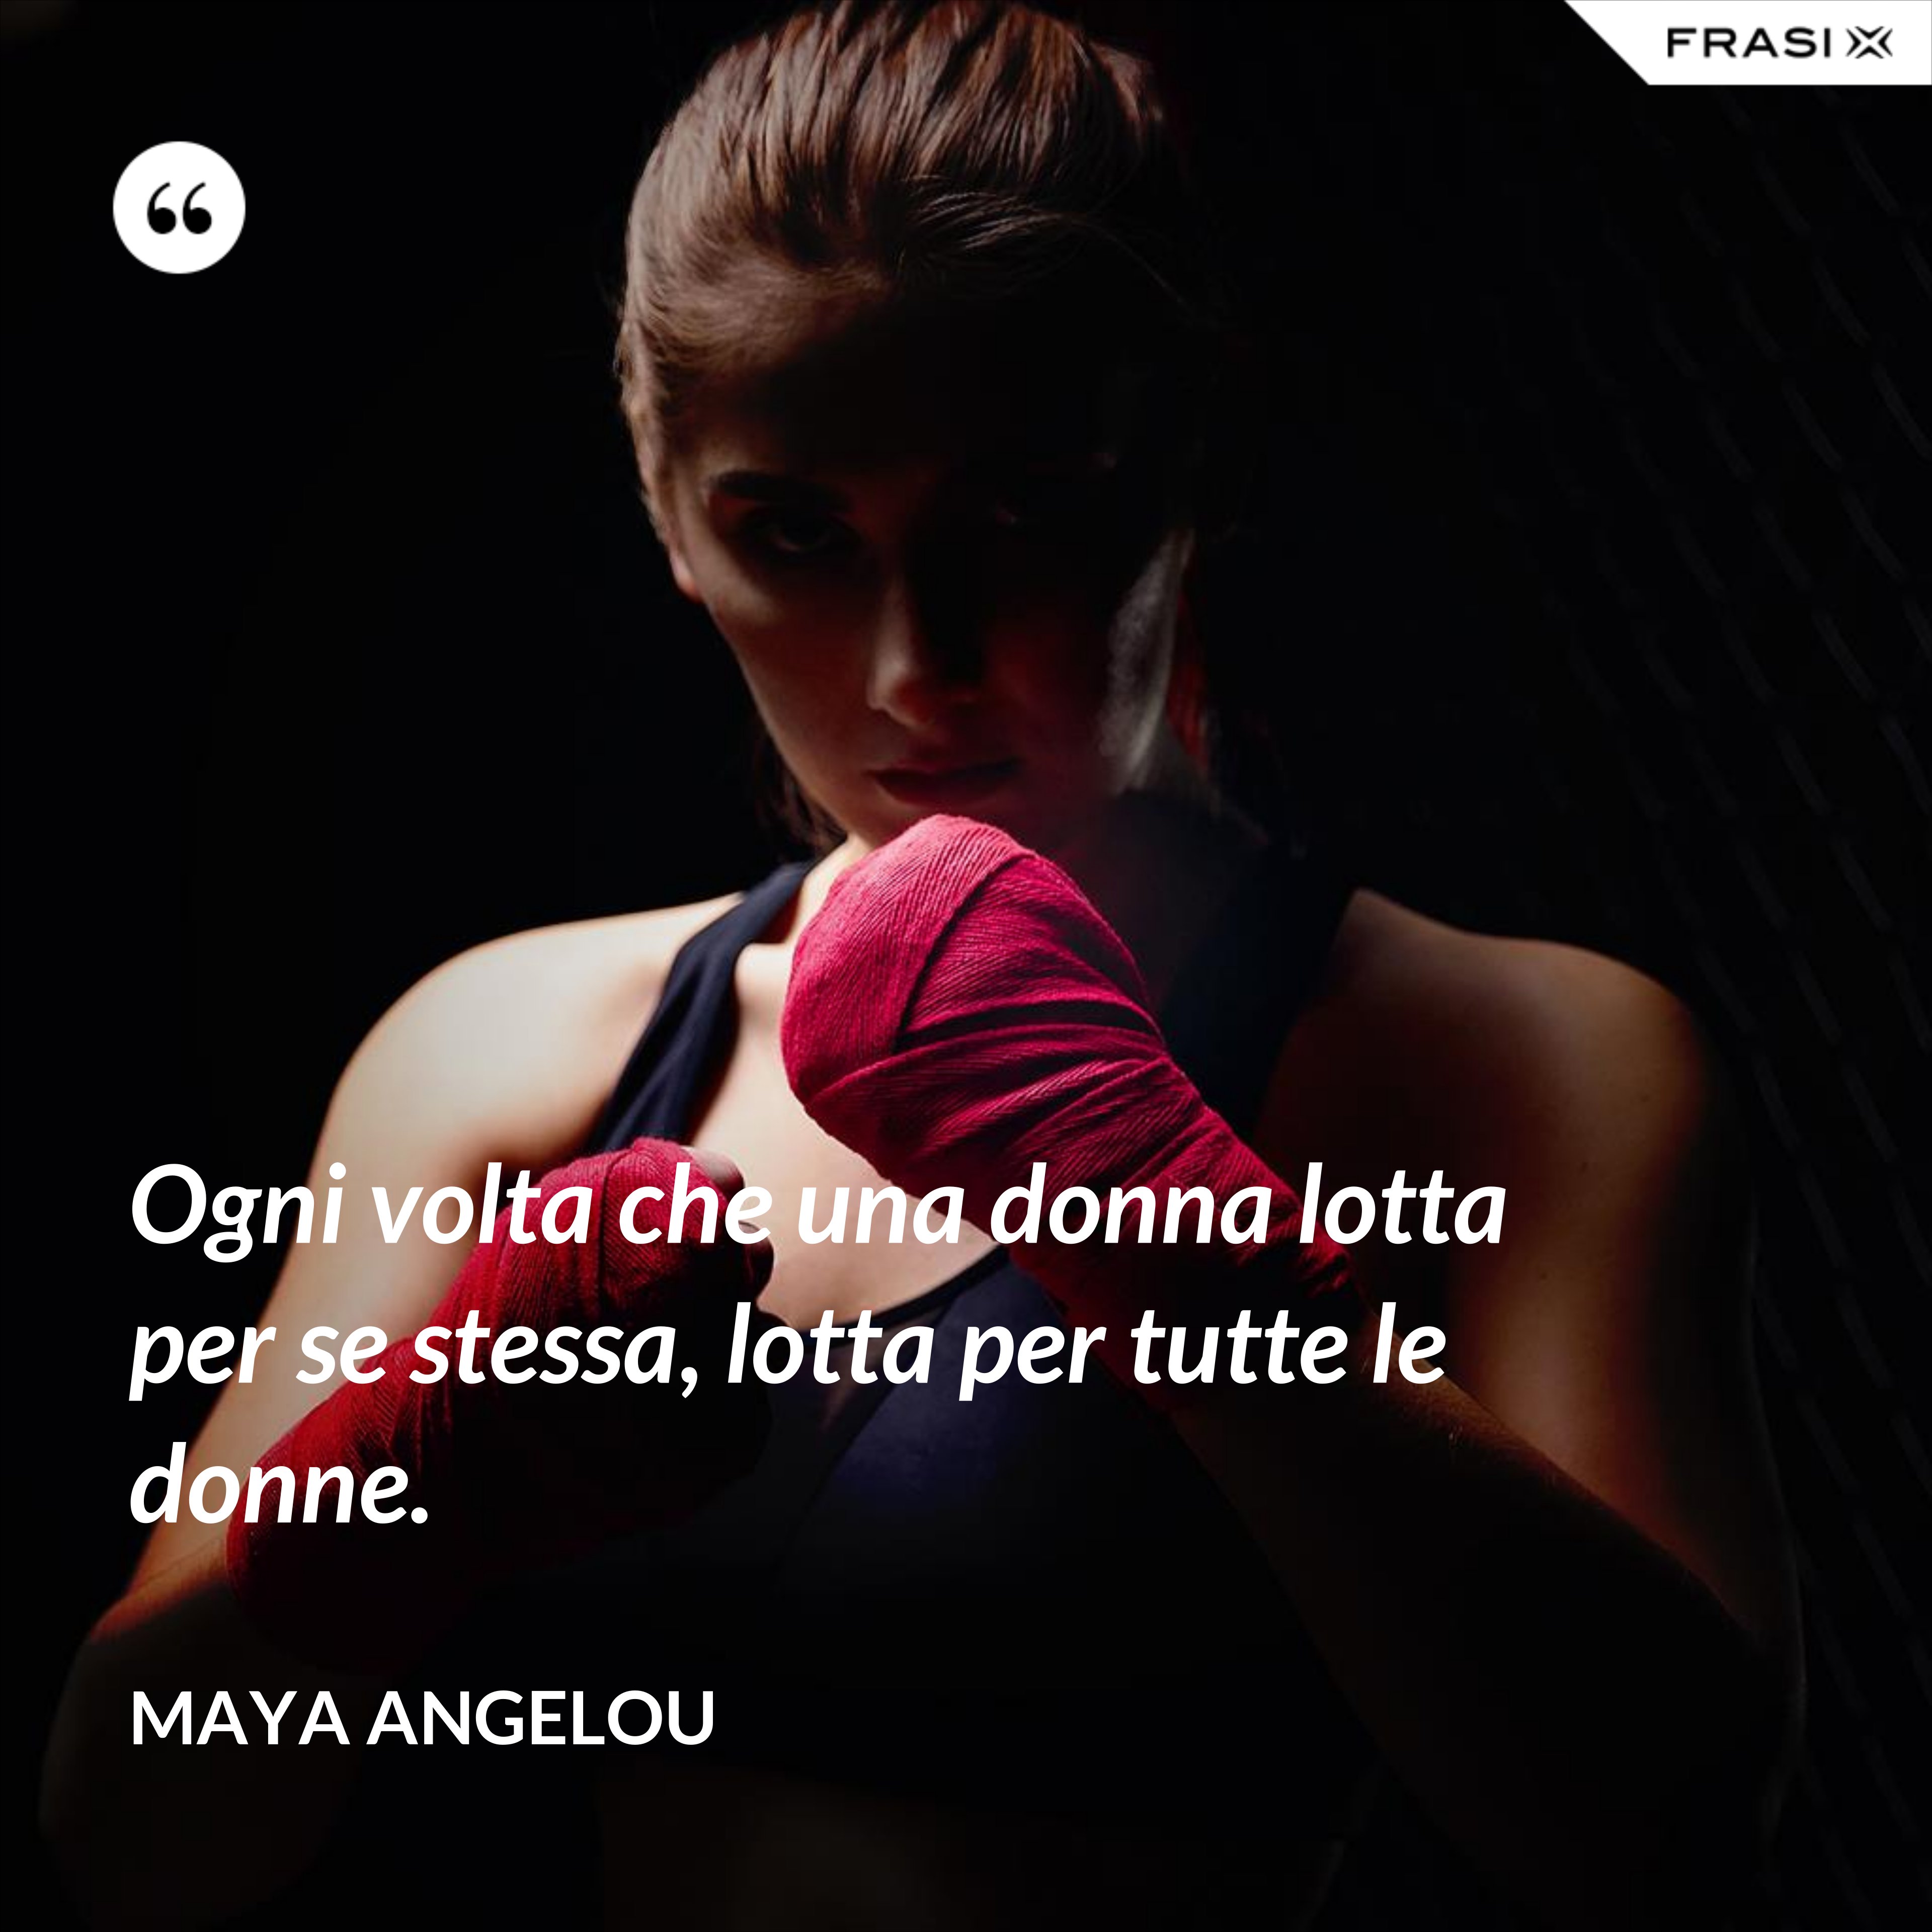 Ogni volta che una donna lotta per se stessa, lotta per tutte le donne. - Maya Angelou